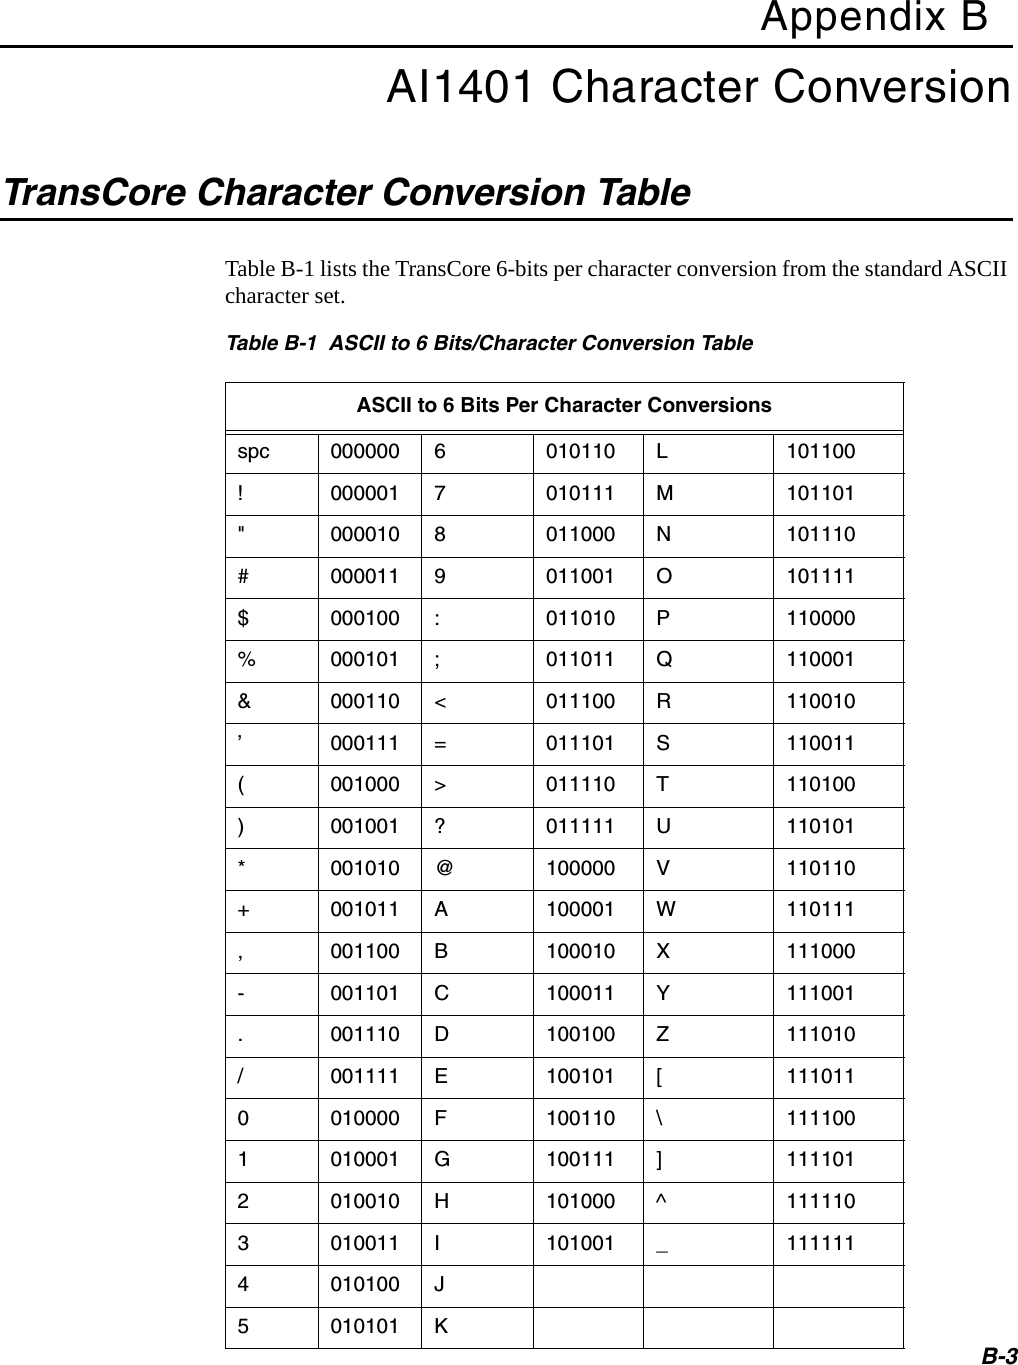 B-3Appendix BAI1401 Character ConversionTransCore Character Conversion TableTable B-1 lists the TransCore 6-bits per character conversion from the standard ASCII character set.Table B-1  ASCII to 6 Bits/Character Conversion TableASCII to 6 Bits Per Character Conversionsspc 000000 6010110 L101100!000001 7010111 M101101&quot;000010 8011000 N101110#000011 9011001 O101111$000100 :011010 P110000%000101 ;011011 Q110001&amp;000110 &lt;011100 R110010’000111 =011101 S110011(001000 &gt;011110 T110100)001001 ?011111 U110101*001010 @100000 V110110+001011 A100001 W110111,001100 B100010 X111000-001101 C100011 Y111001.001110 D100100 Z111010/001111 E100101 [1110110010000 F100110 \1111001010001 G100111 ]1111012010010 H101000 ^1111103010011 I101001 _1111114010100 J5010101 K